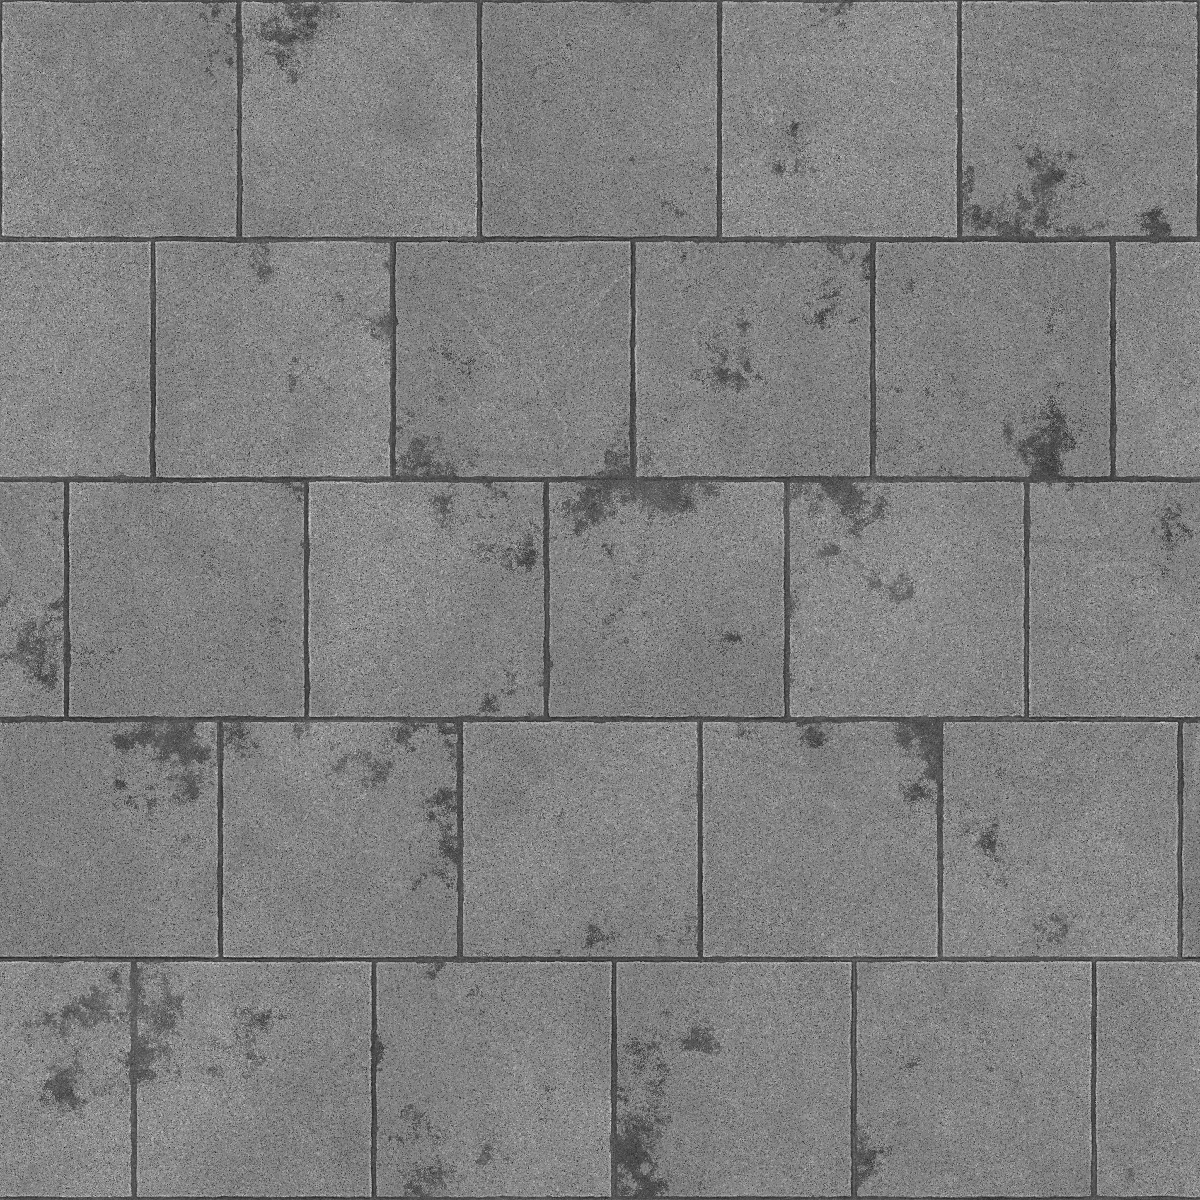 Dark Concrete Pavement PBR Texture